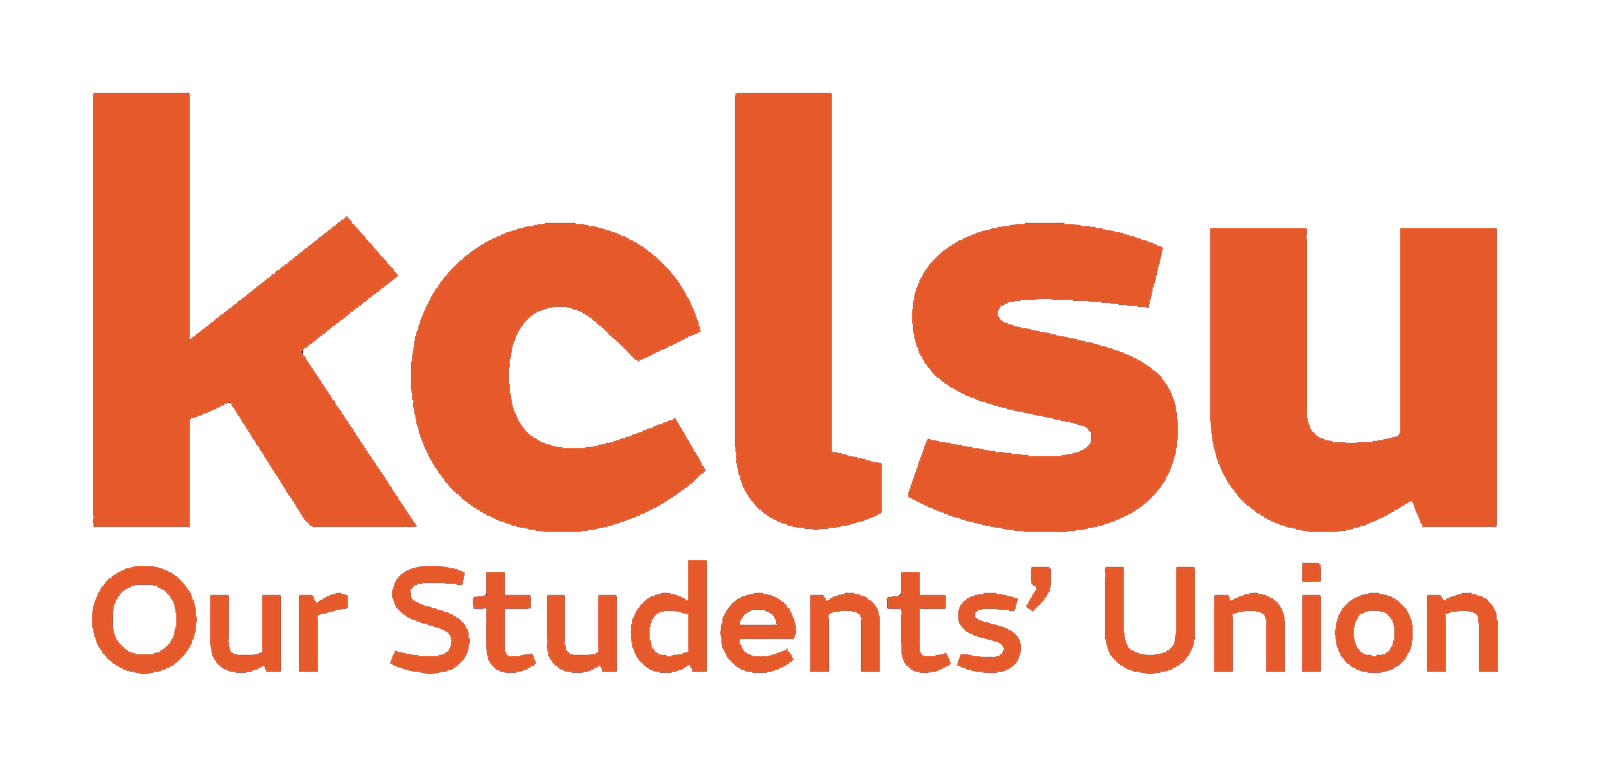 KCLSU logo